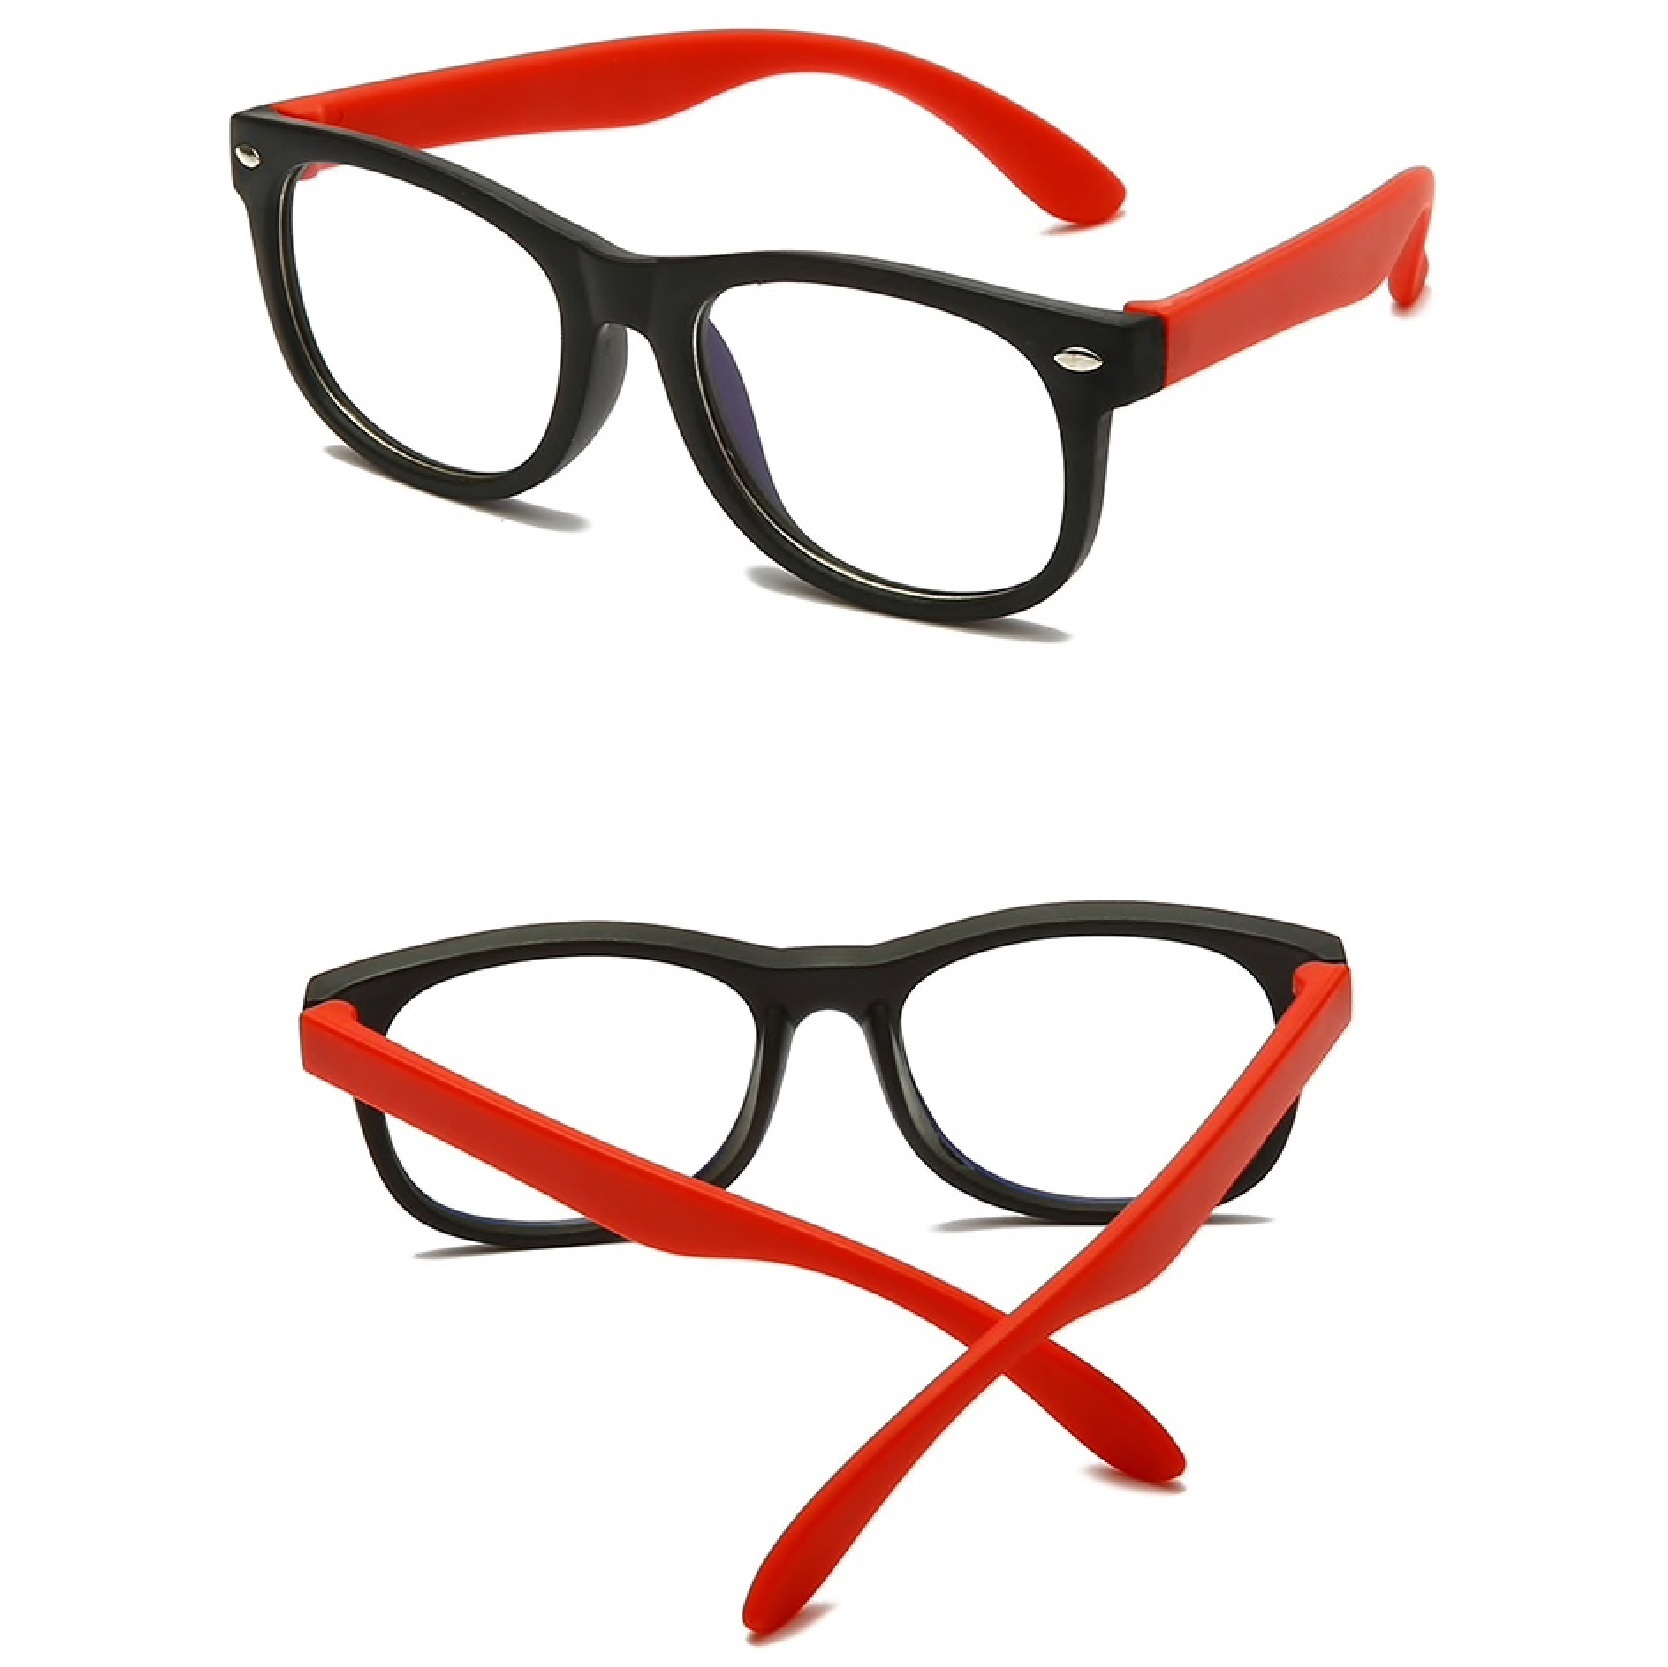 Gafas Protectoras contra Luz láser azul y roja - 1Spot2Shop